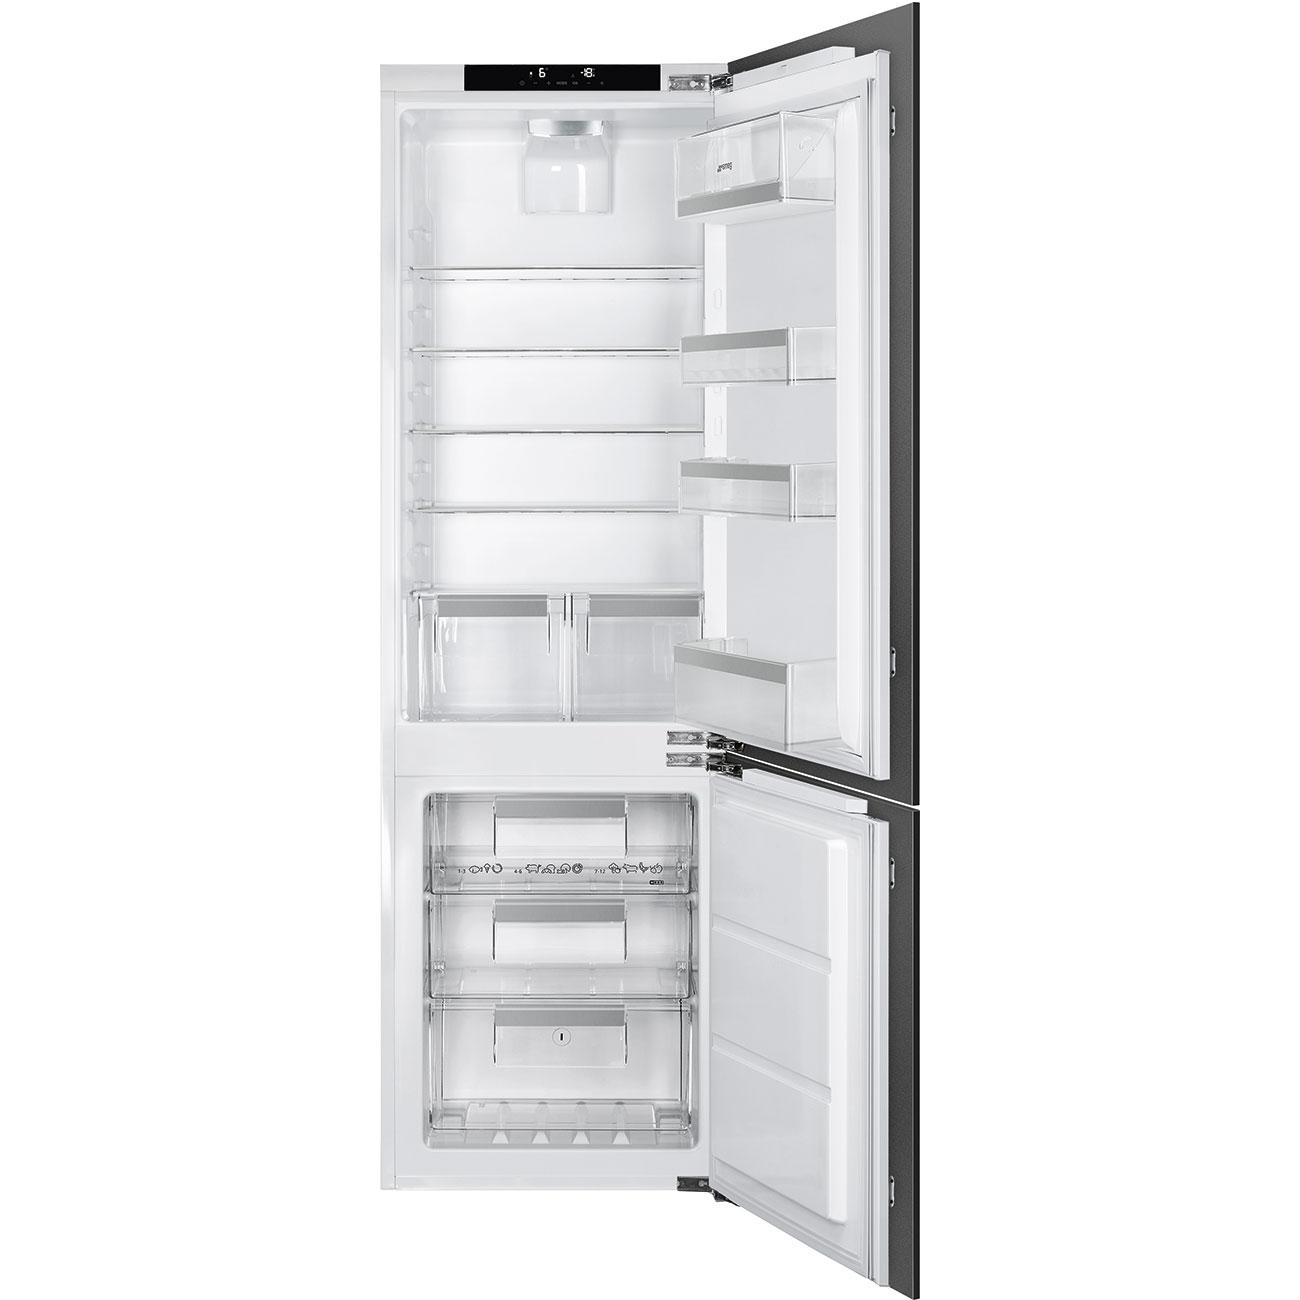 Встраиваемый холодильник Smeg C8174DN2E серебристый